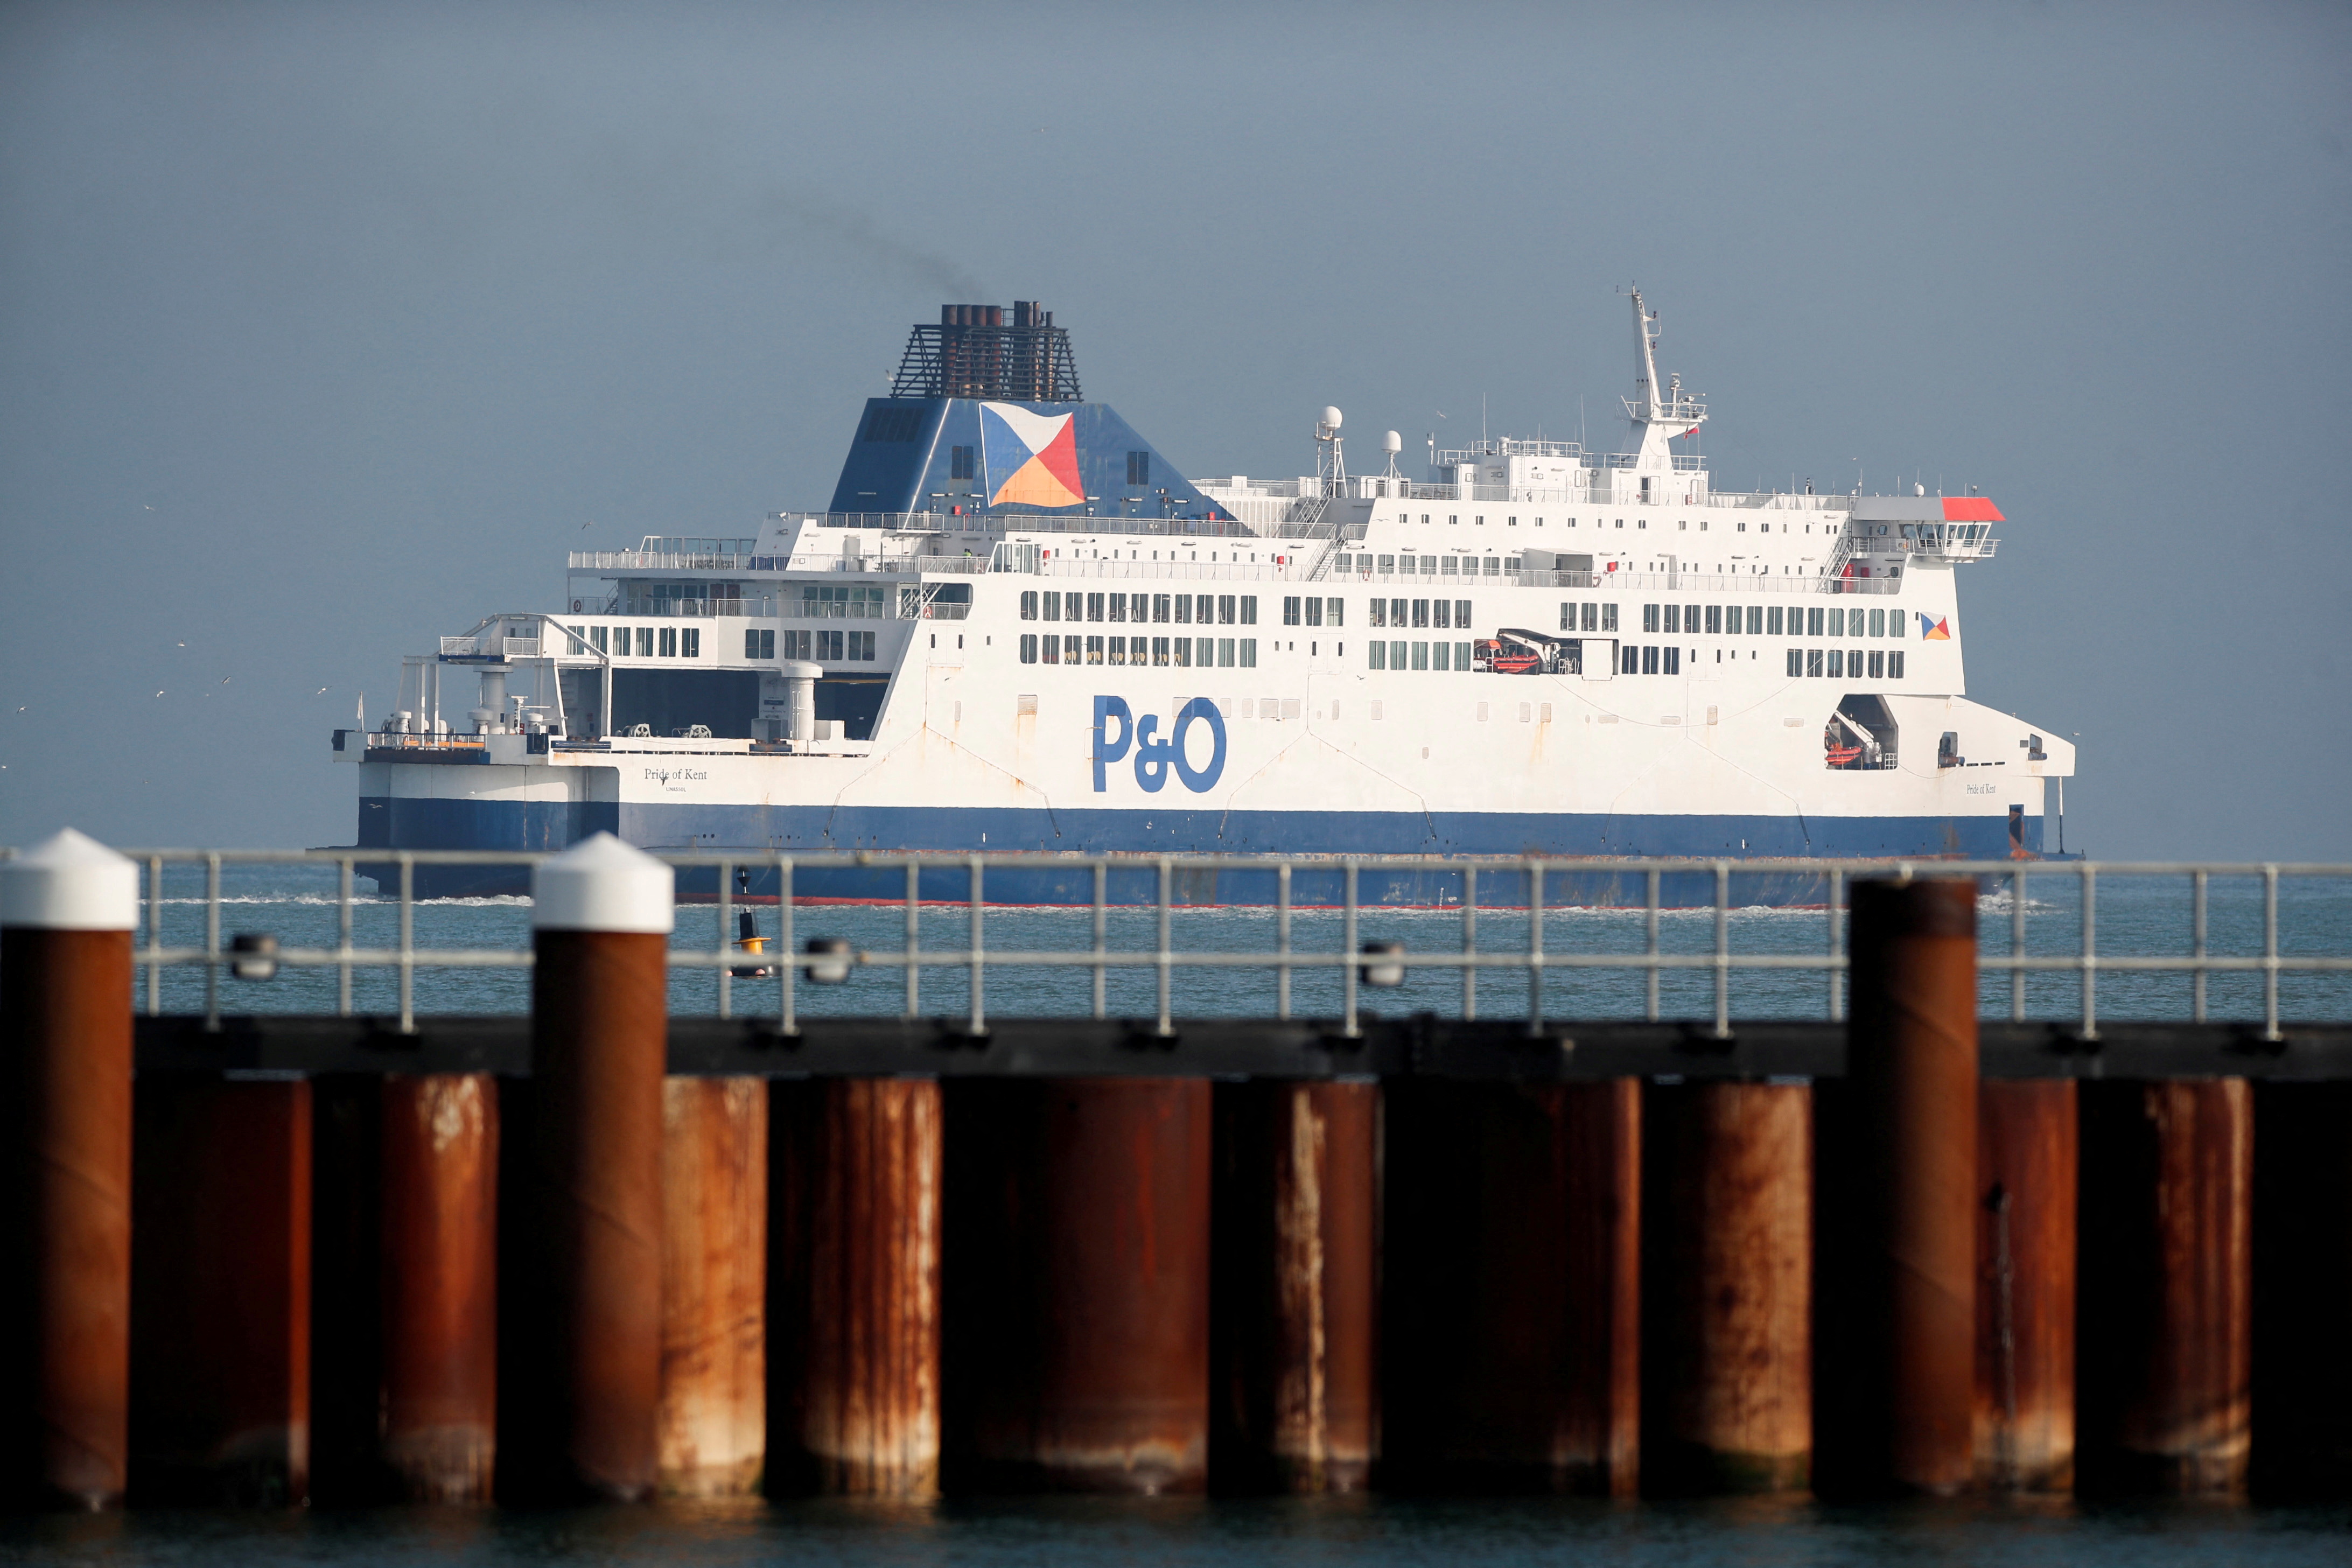 La compagnie maritime P&O suscite l'indignation, un navire immobilisé